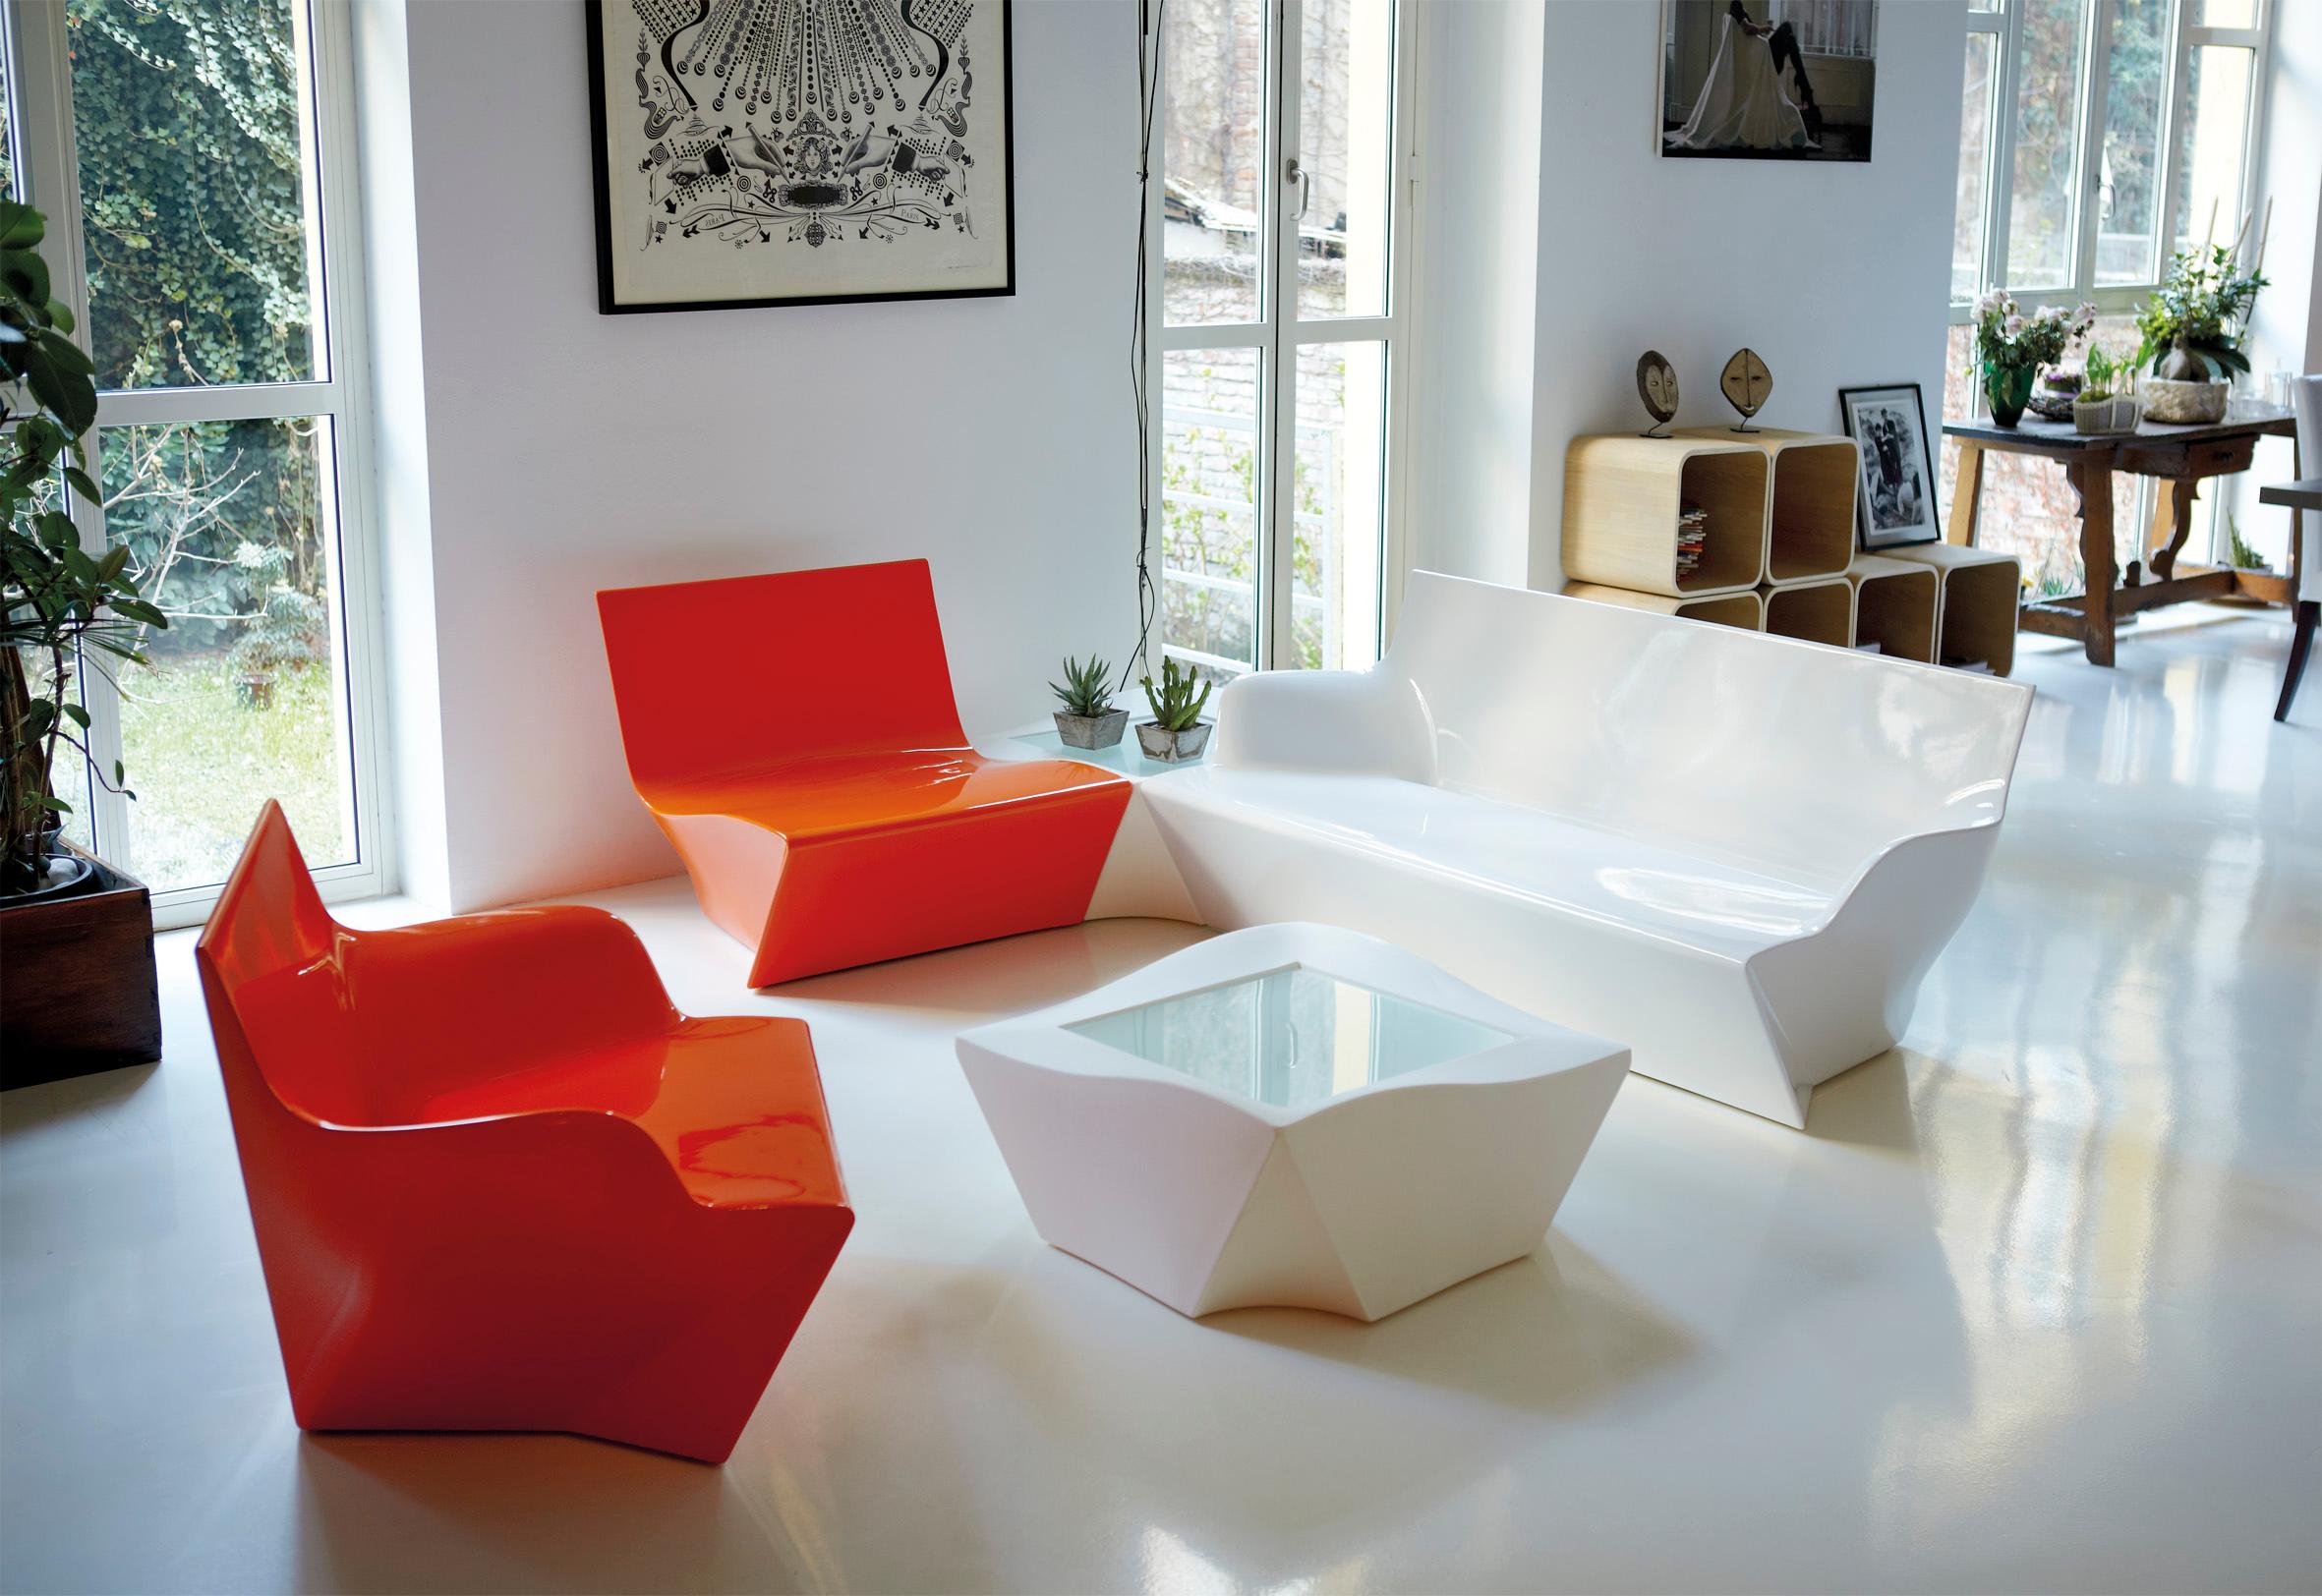 Kami Ichi niedriger Stuhl in Limonengrün von Marc Sadler
Abmessungen: T 75 x B 80 x H 70 cm. Sitzhöhe: 35 cm.
MATERIALEN: Polyethylen.
Gewicht: 15 kg.

Erhältlich in verschiedenen Farbvarianten. Dieses Produkt ist für die Verwendung im Innen- und